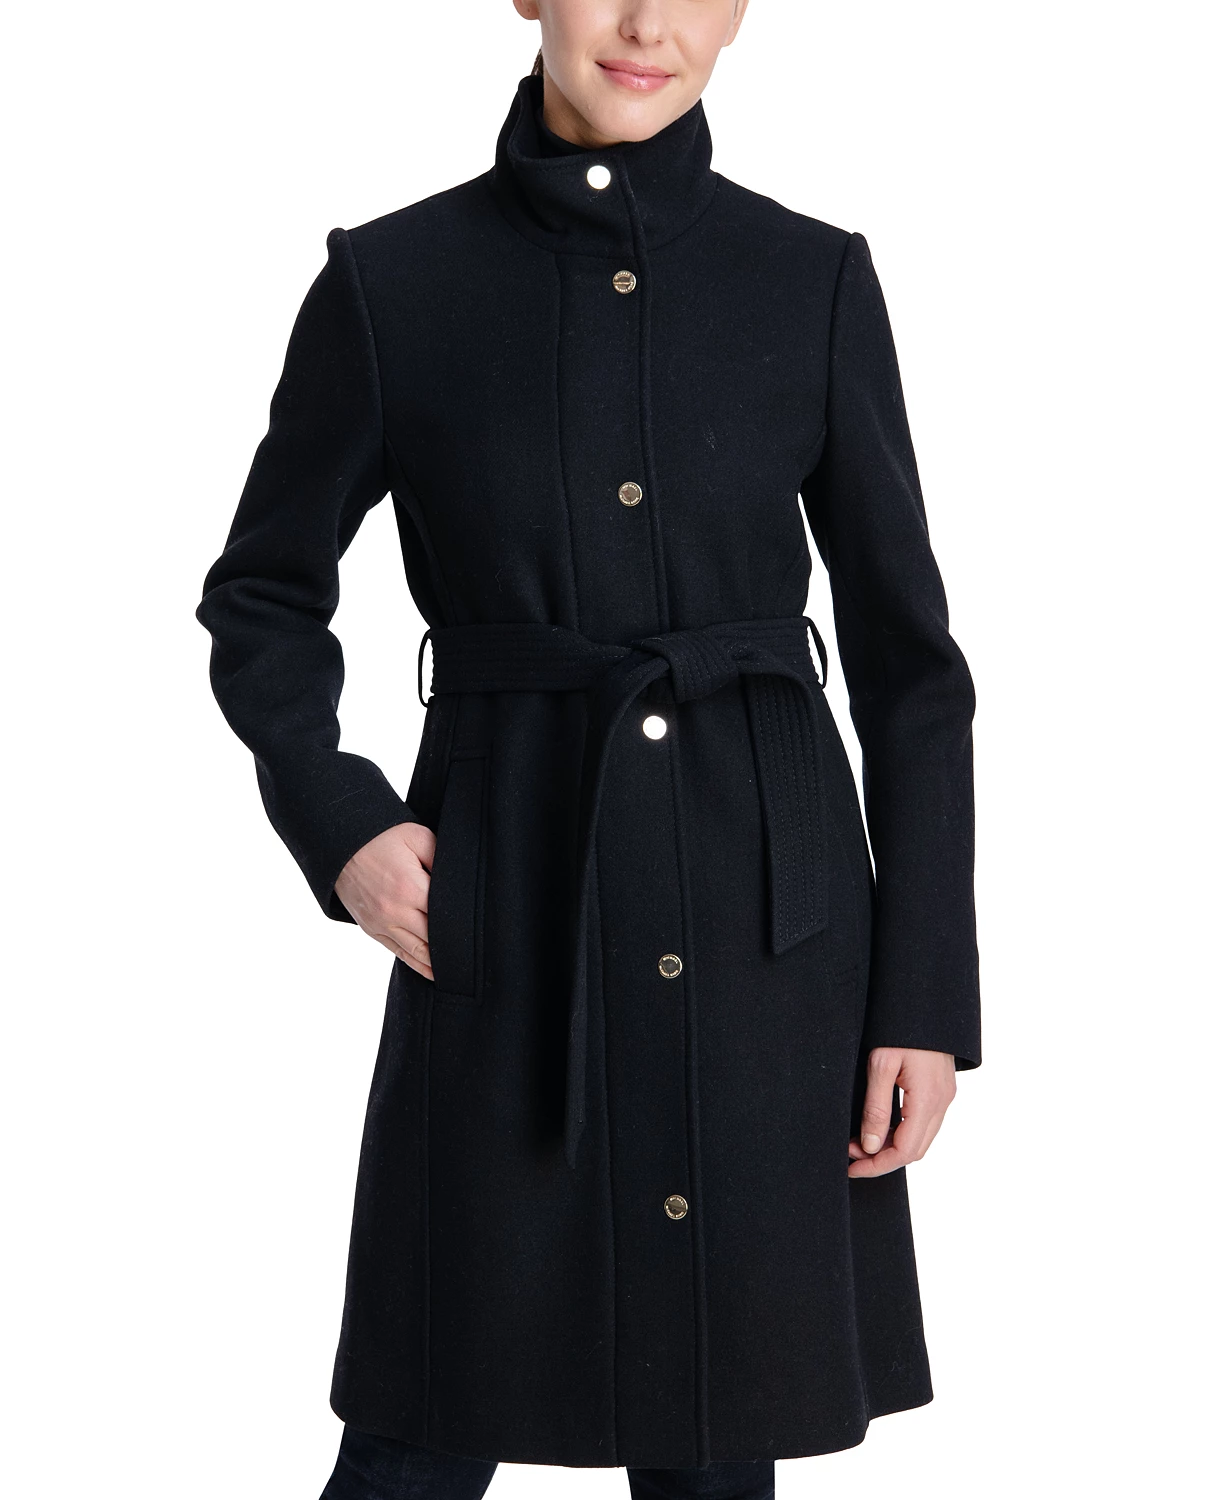 MICHAEL Michael Kors Women’s Belted Coat $160.00